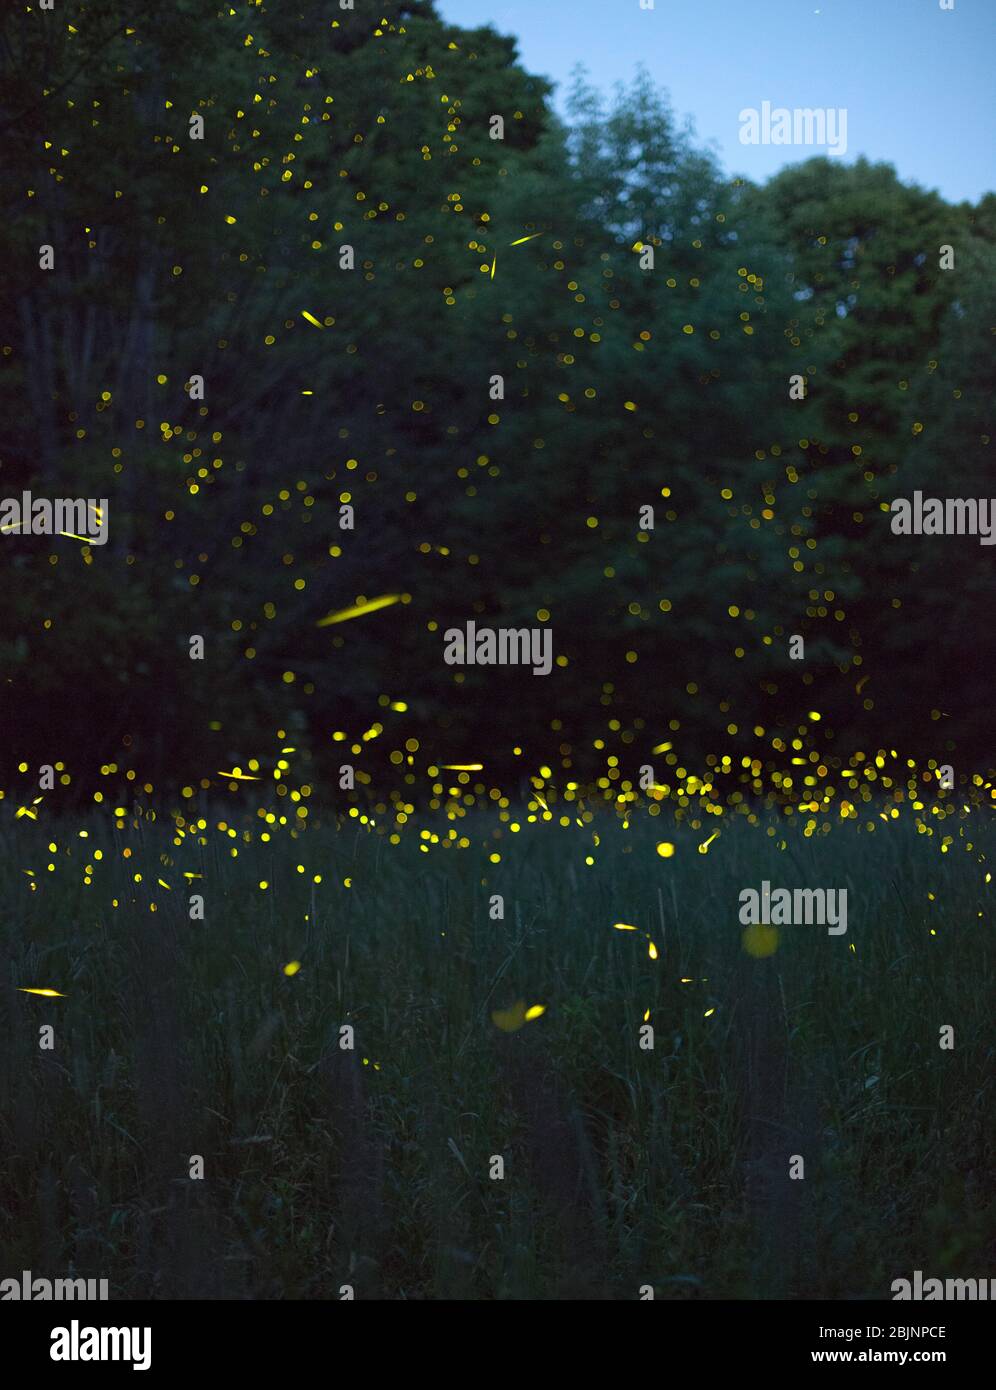 Una imagen compuesta que muestra cientos de luciérnagas destellando por la noche en un campo, con árboles en el fondo, en el norte del estado de Nueva York, Dryden, NY USA Foto de stock